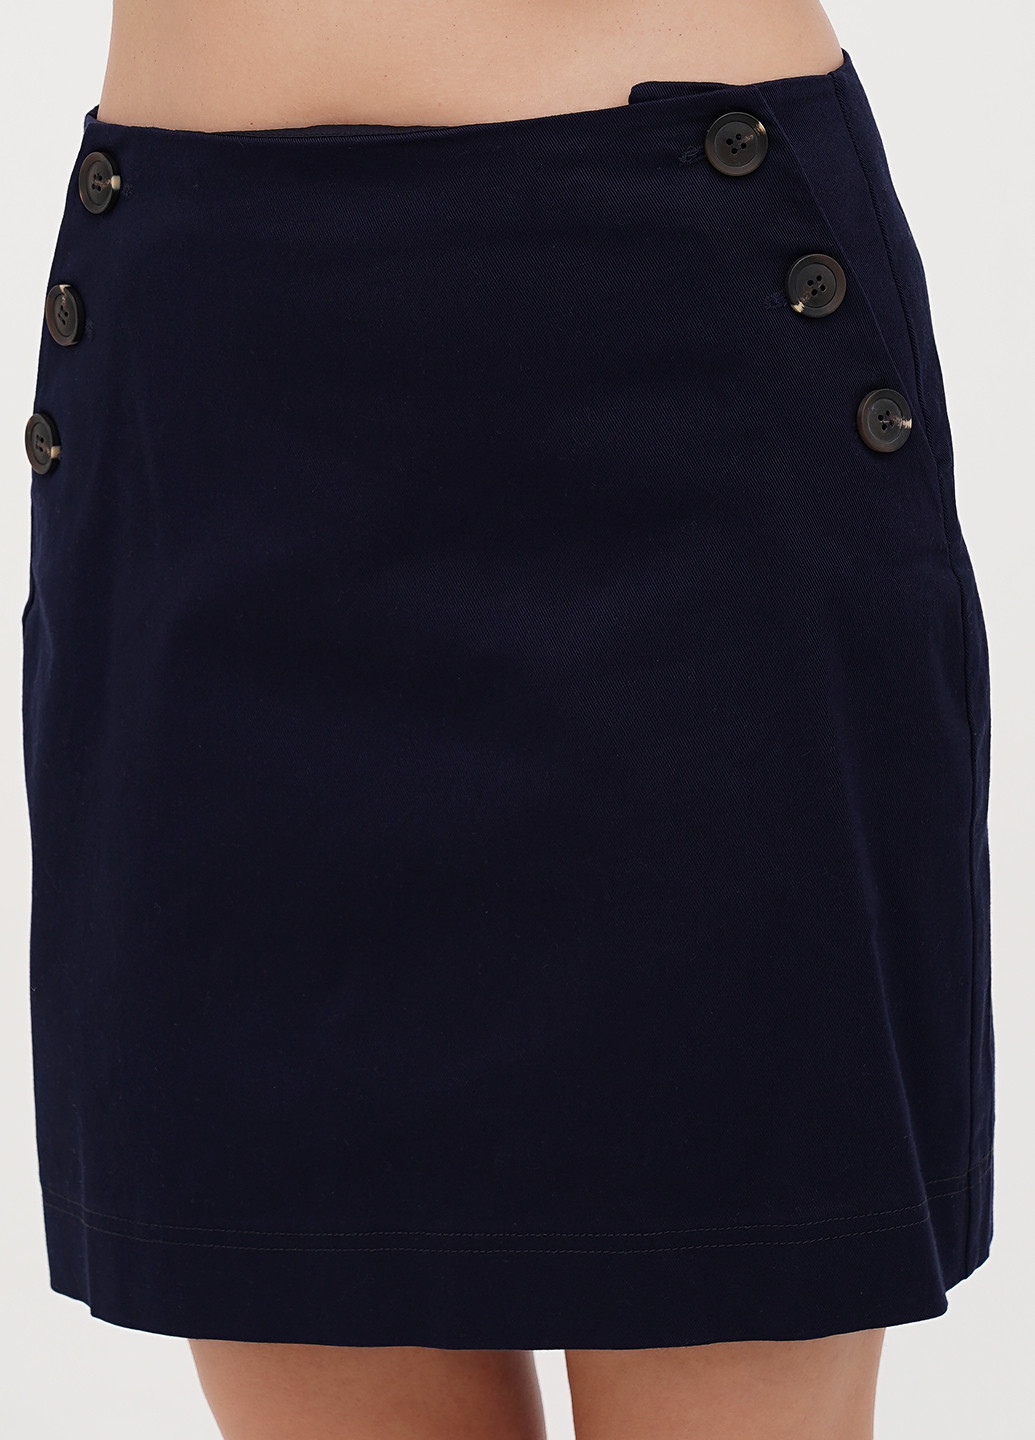 Темно-синяя кэжуал однотонная юбка Boden а-силуэта (трапеция)